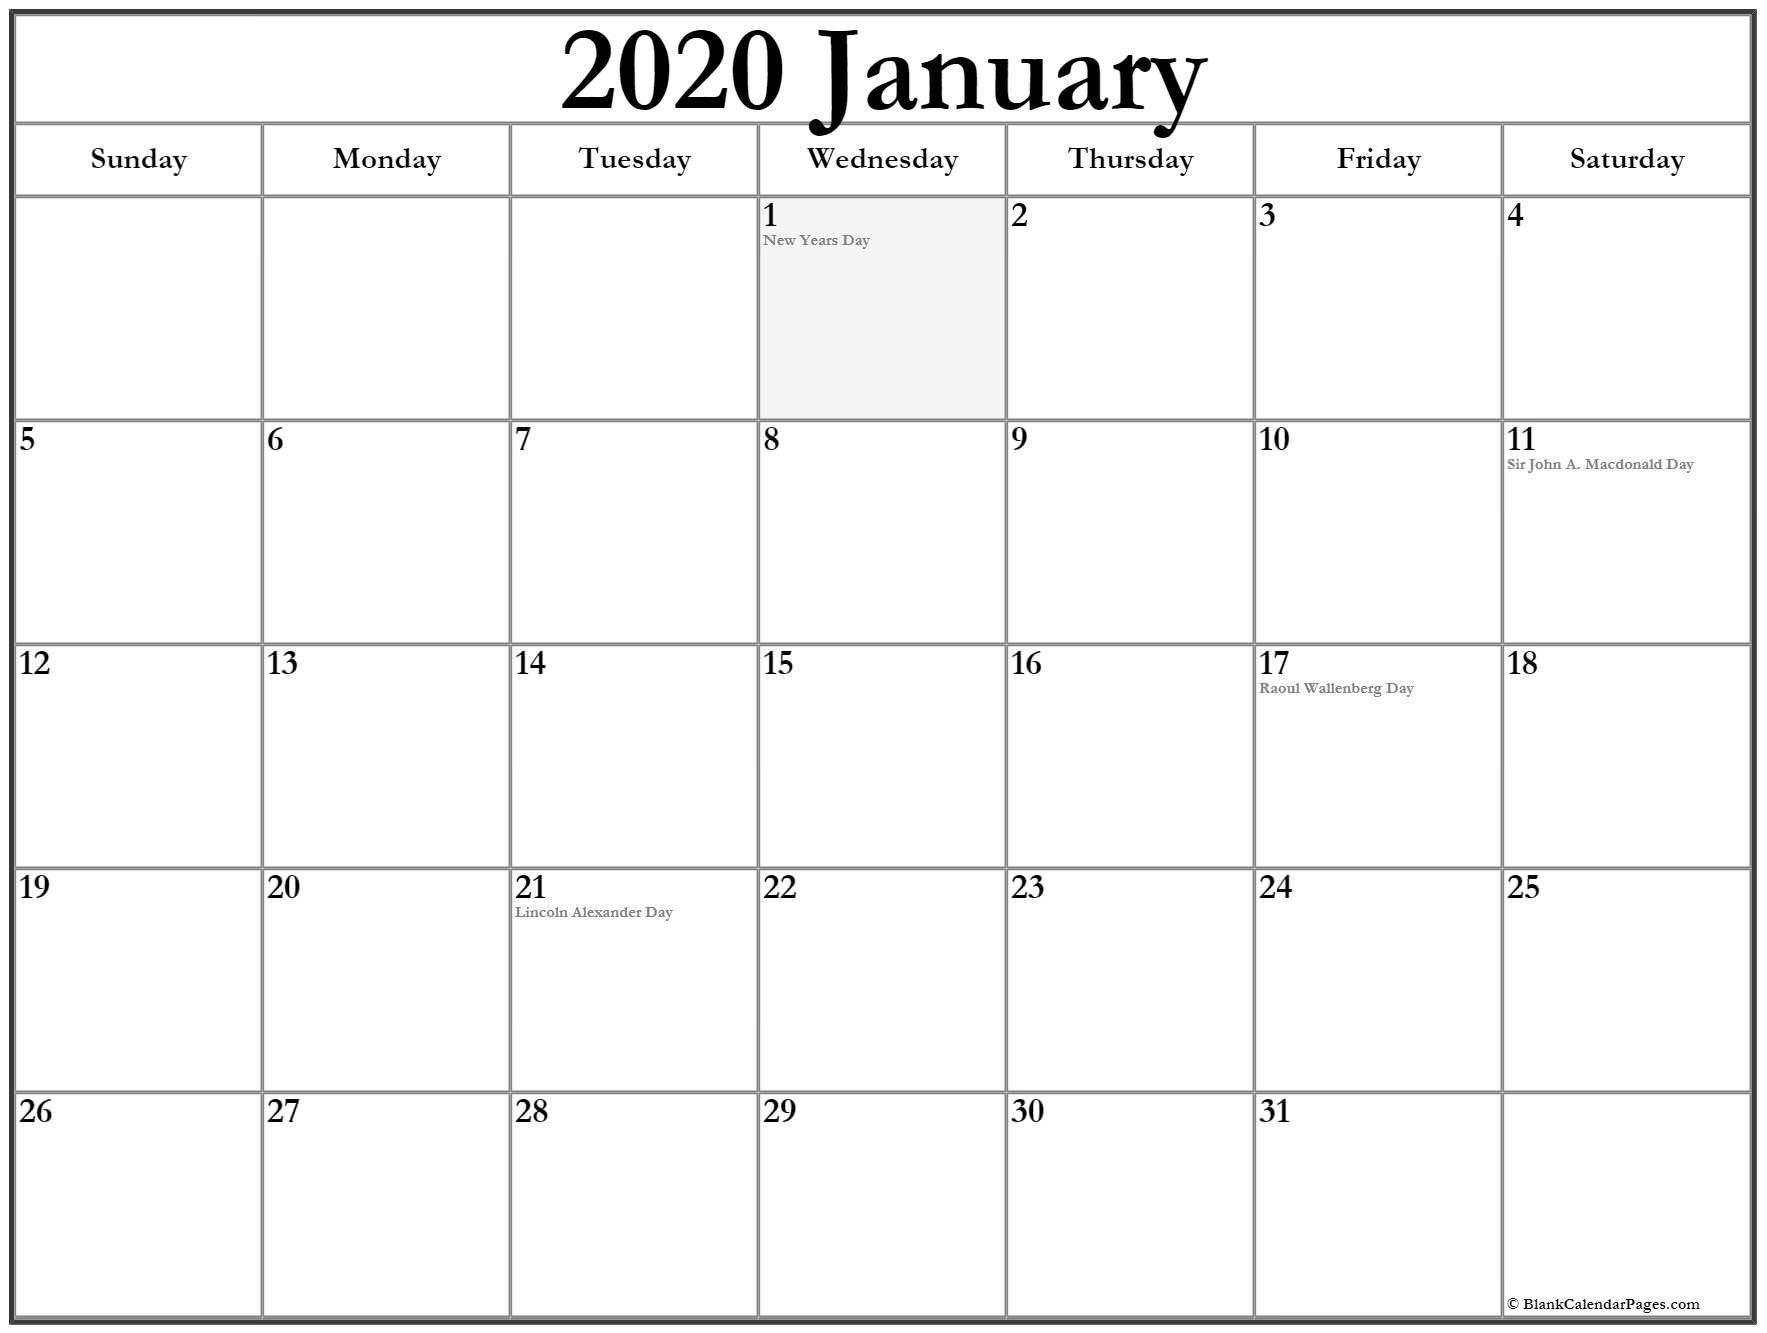 January 2020 Calendar With Holidays | Holiday Calendar